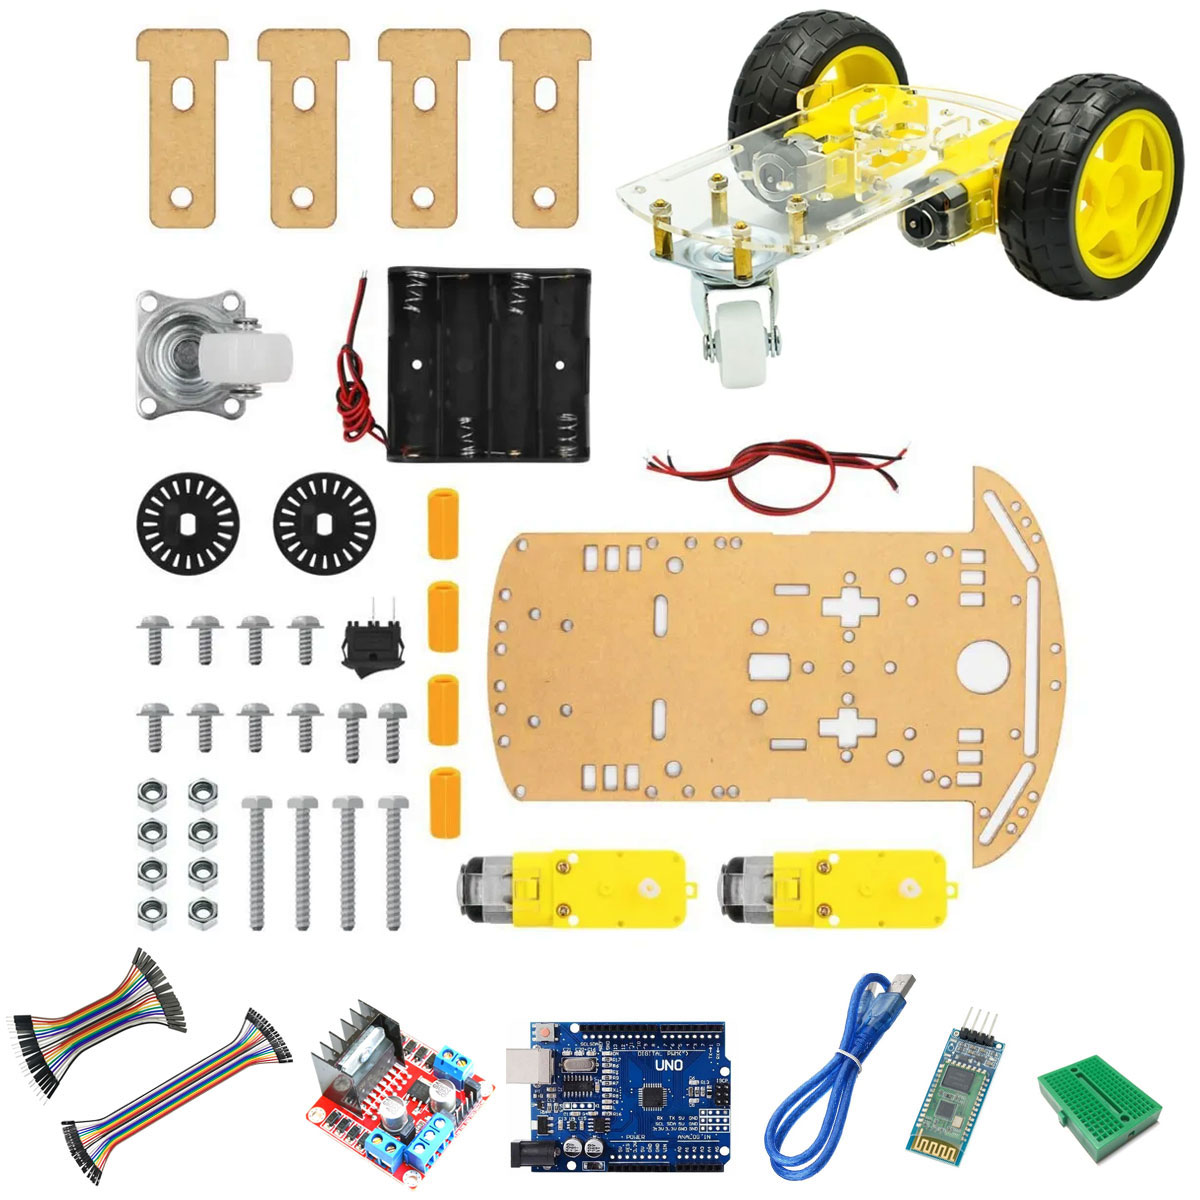 Kit para Montar: Robô Carrinho Chassi 2 Rodas controlado por celular